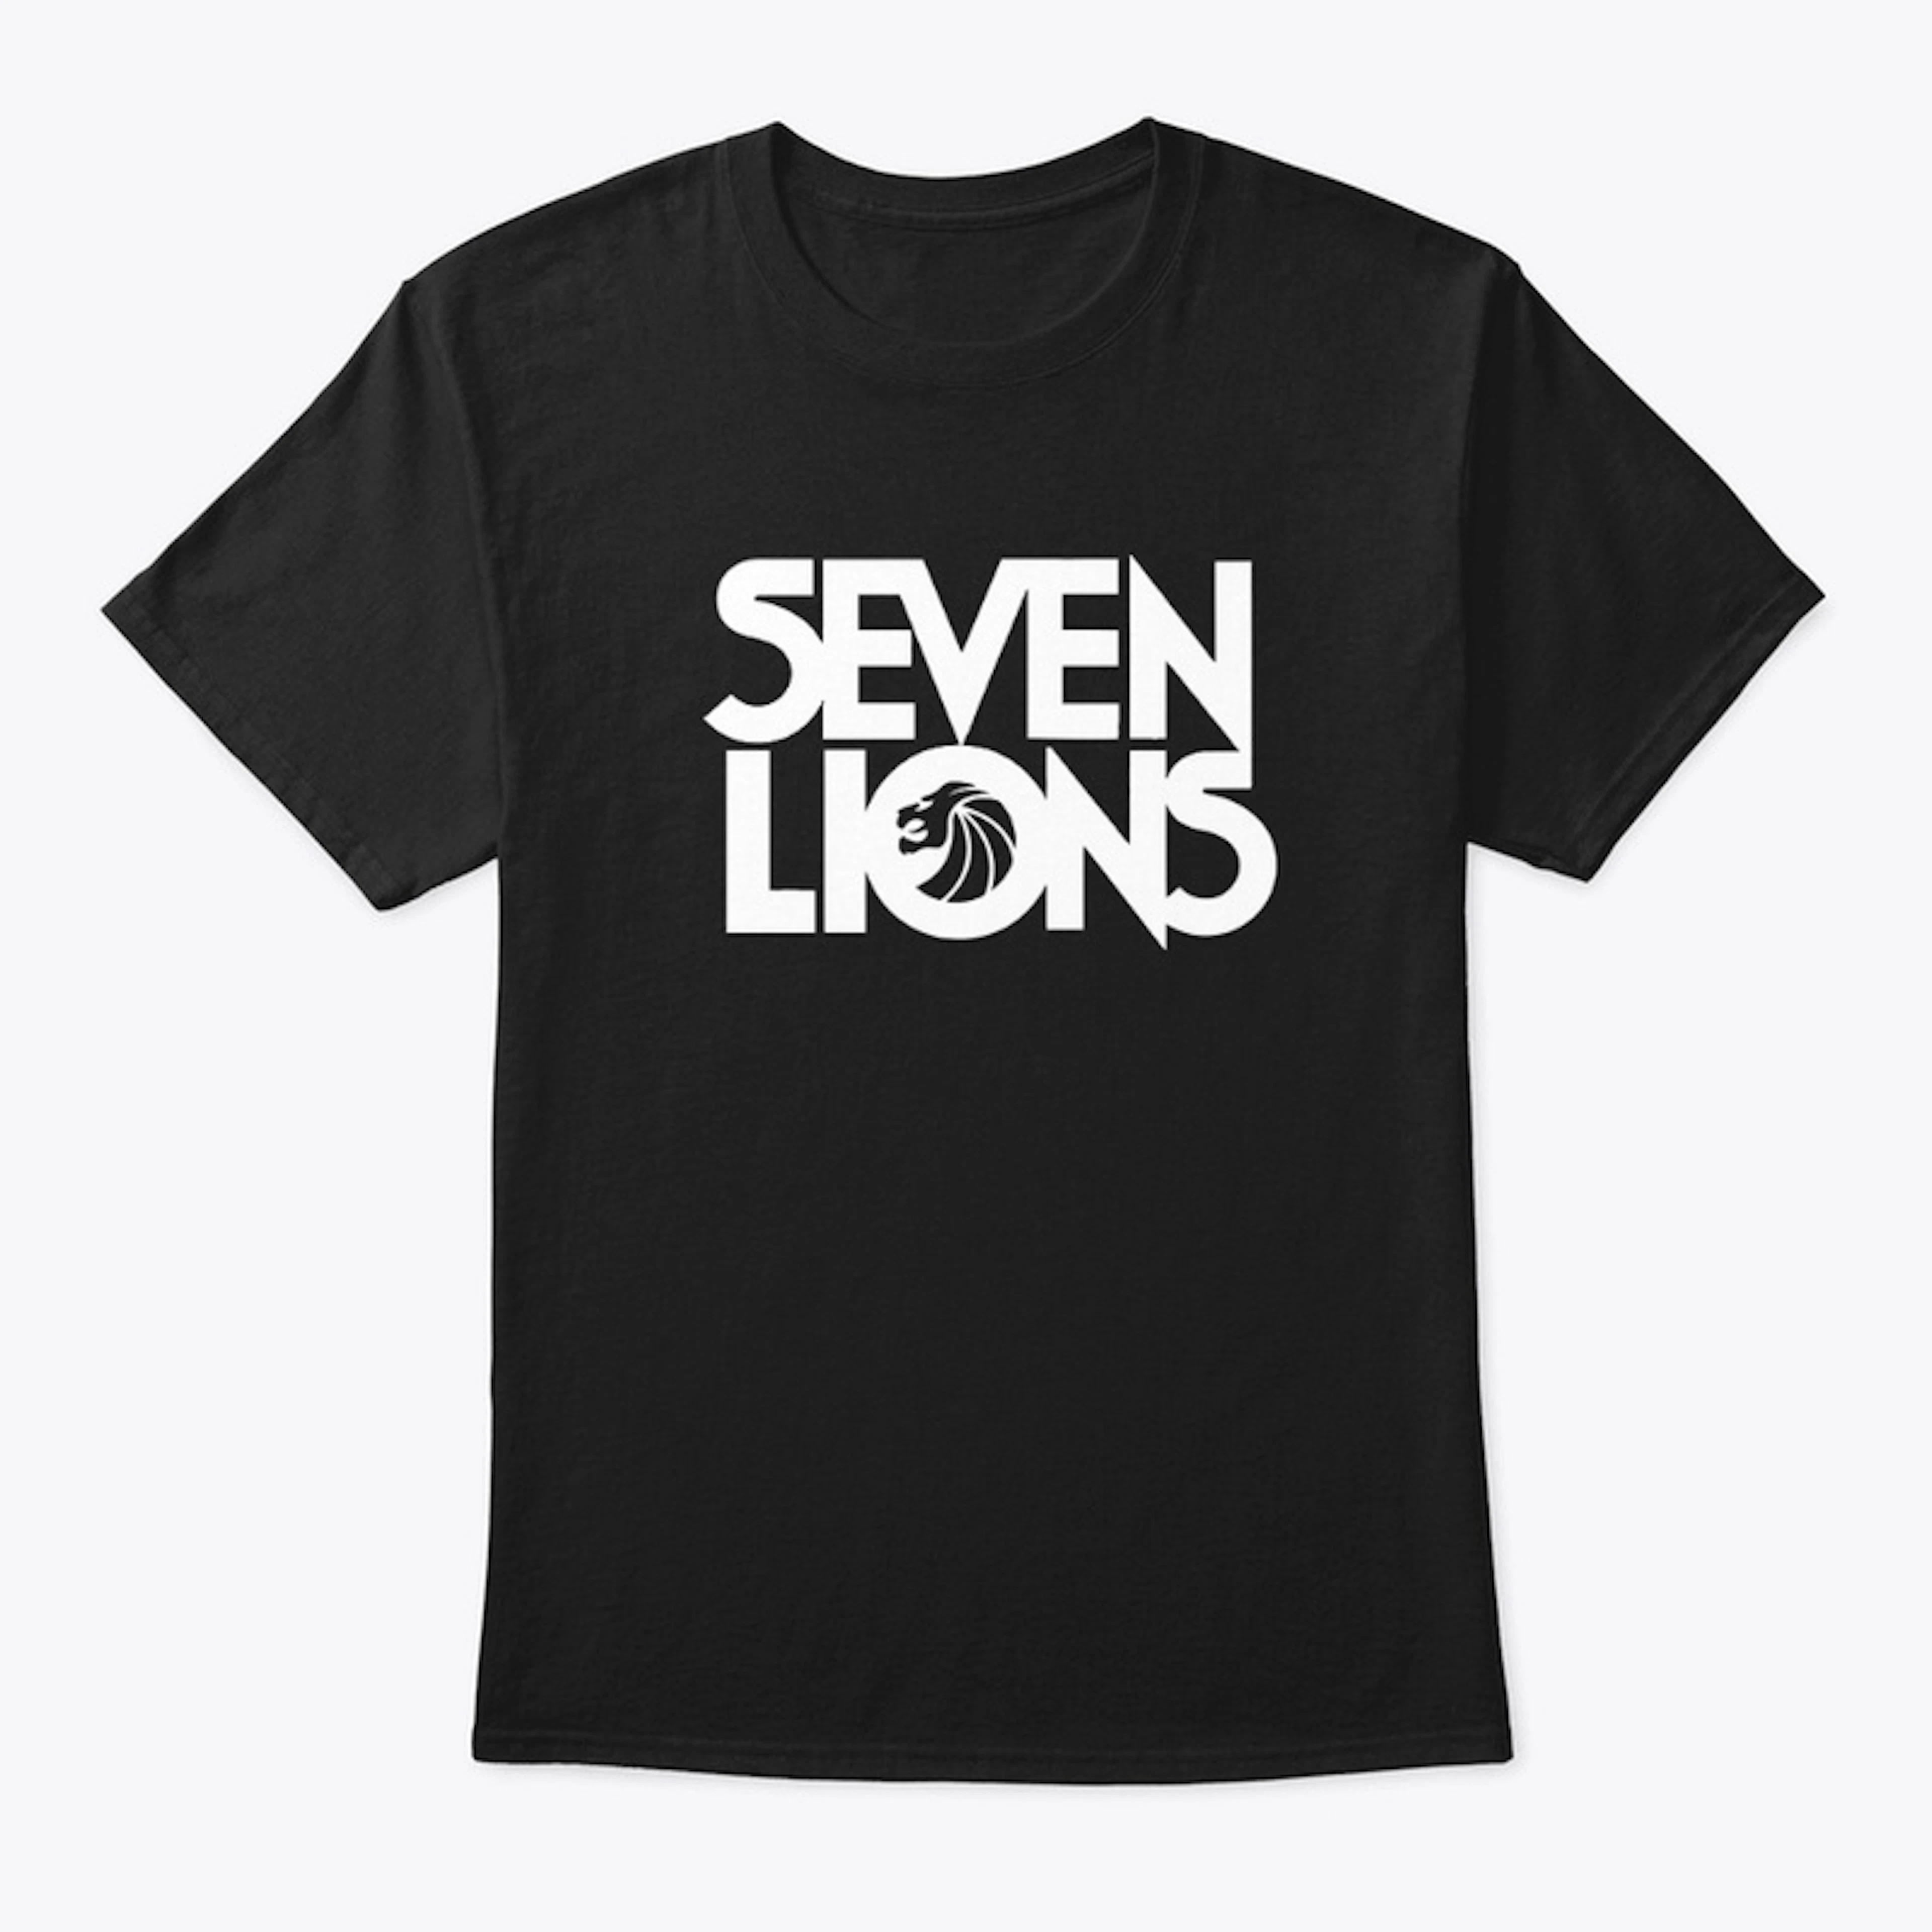 Seven Lions Merch